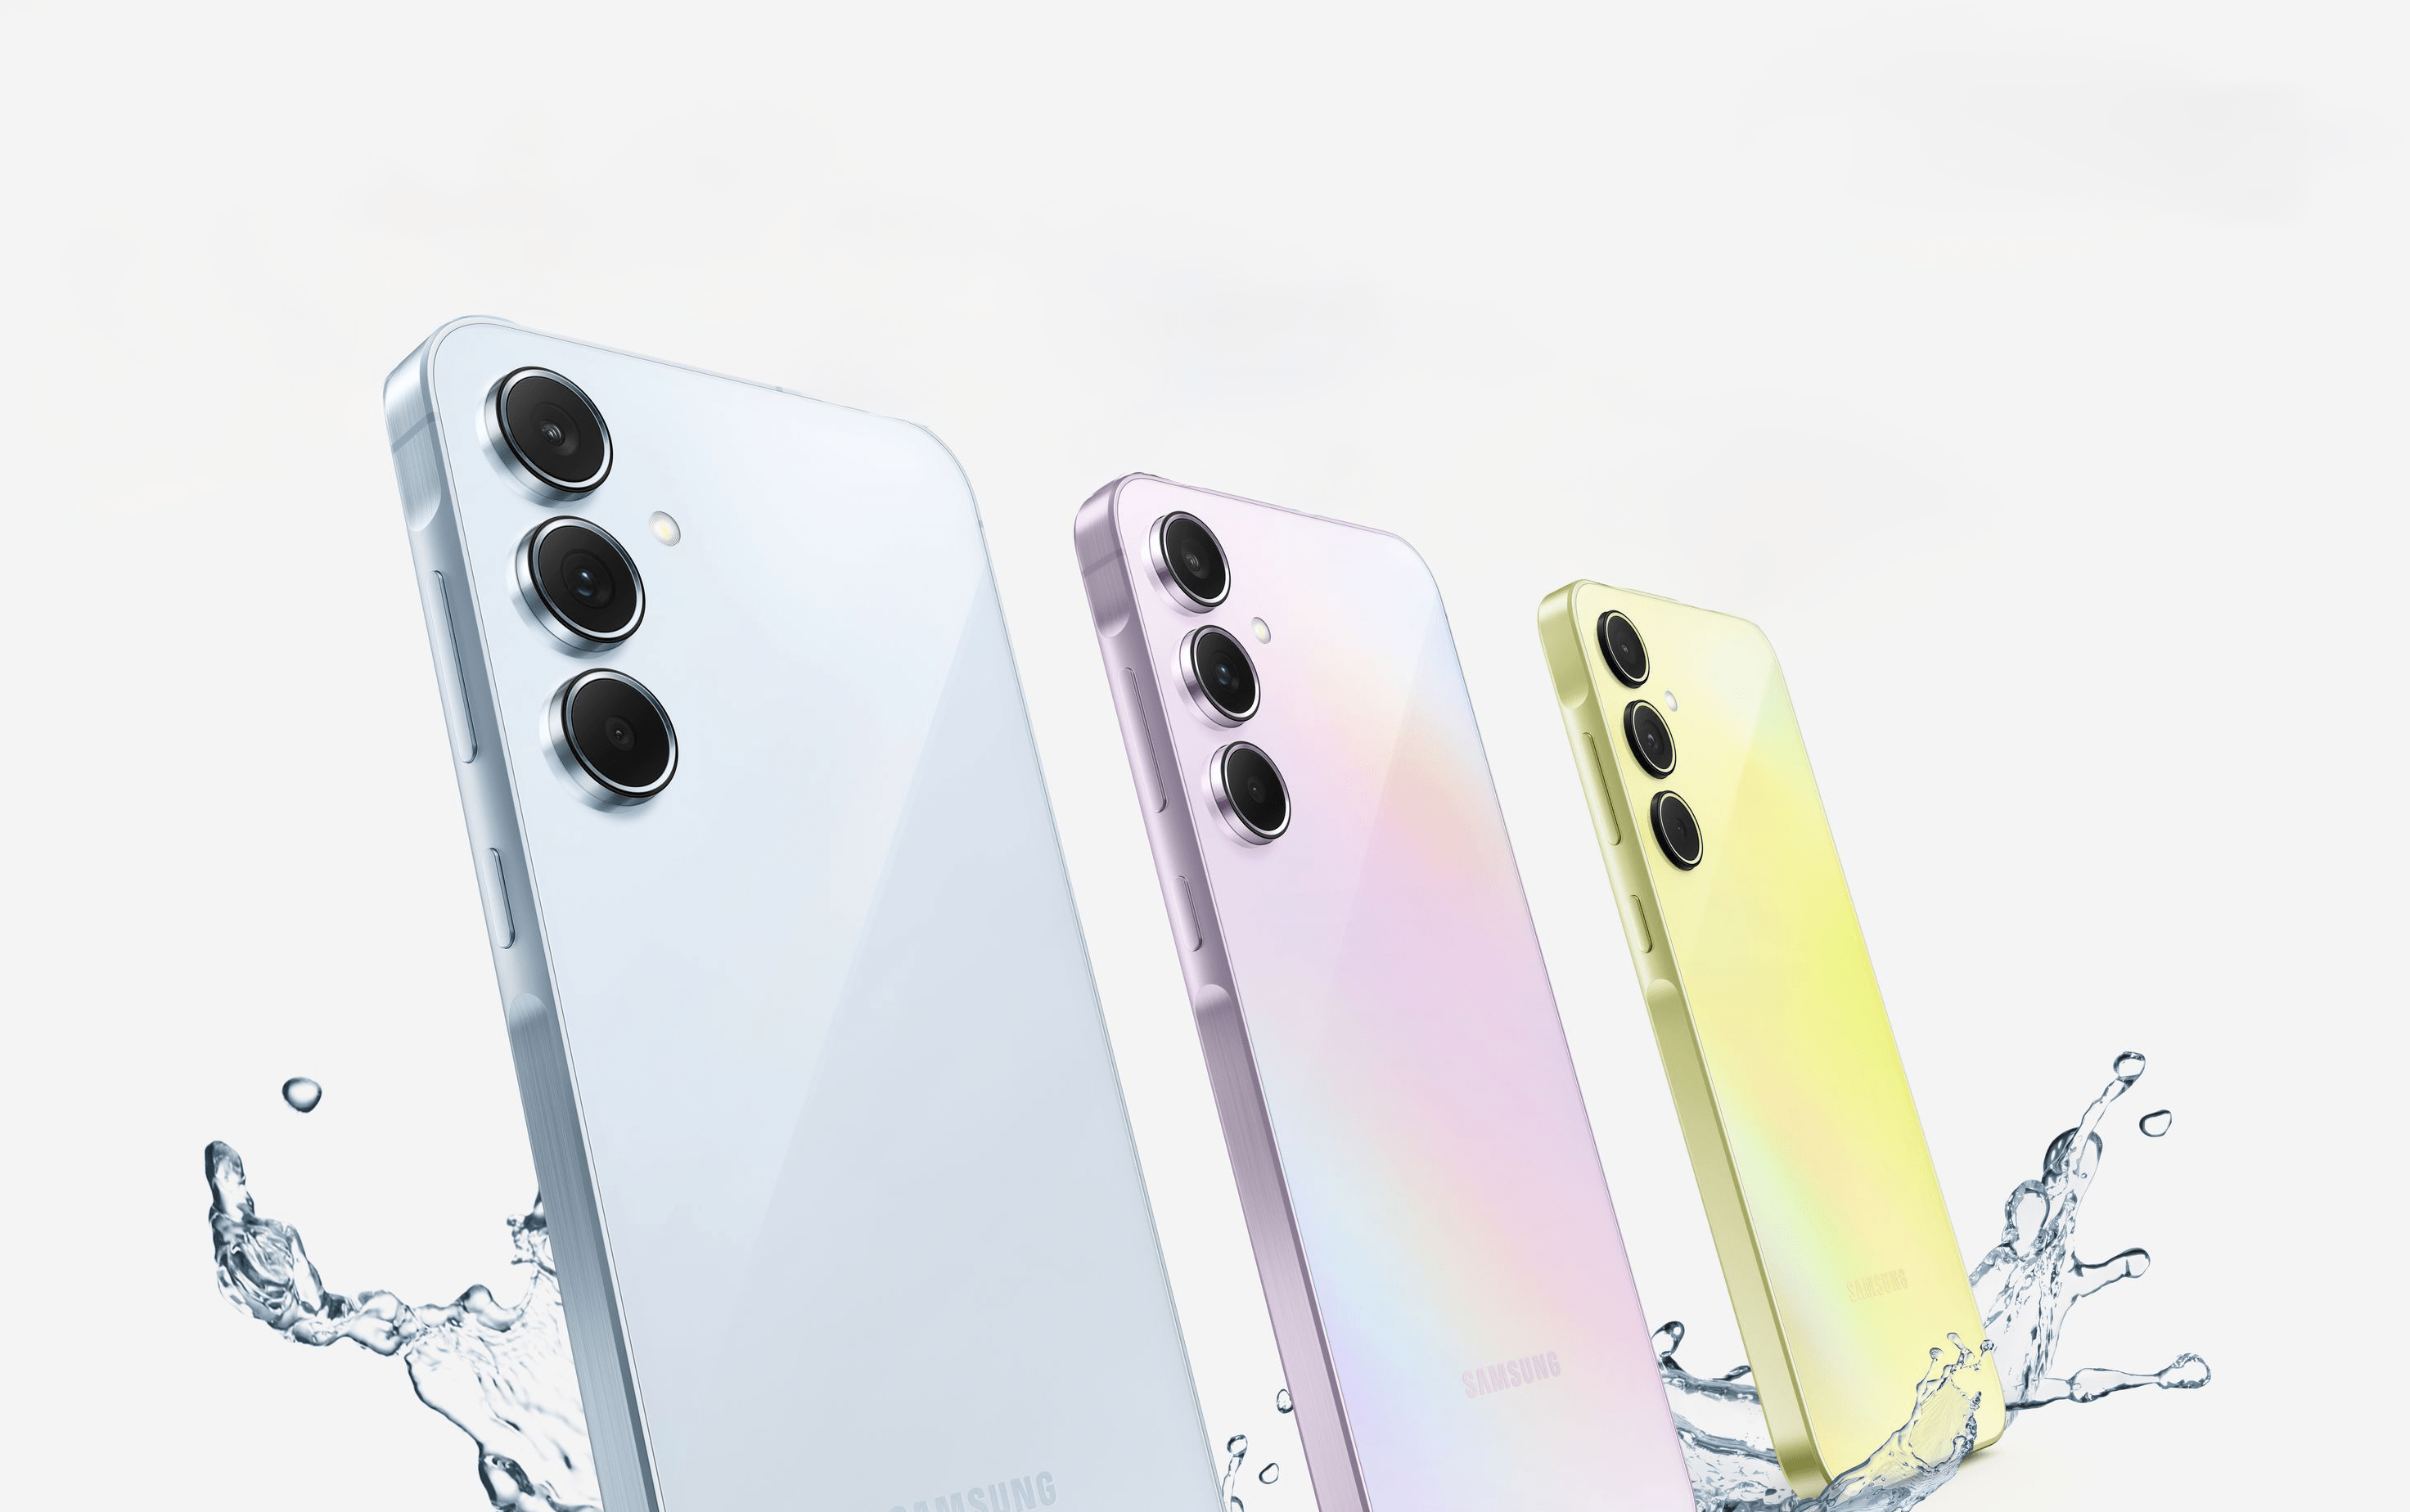 Trzy smartfony Samsunga różnych kolorów, umieszczone pionowo z aparatem skierowanym na widz, na białym tle z efektem rozbryzgującej się wody.